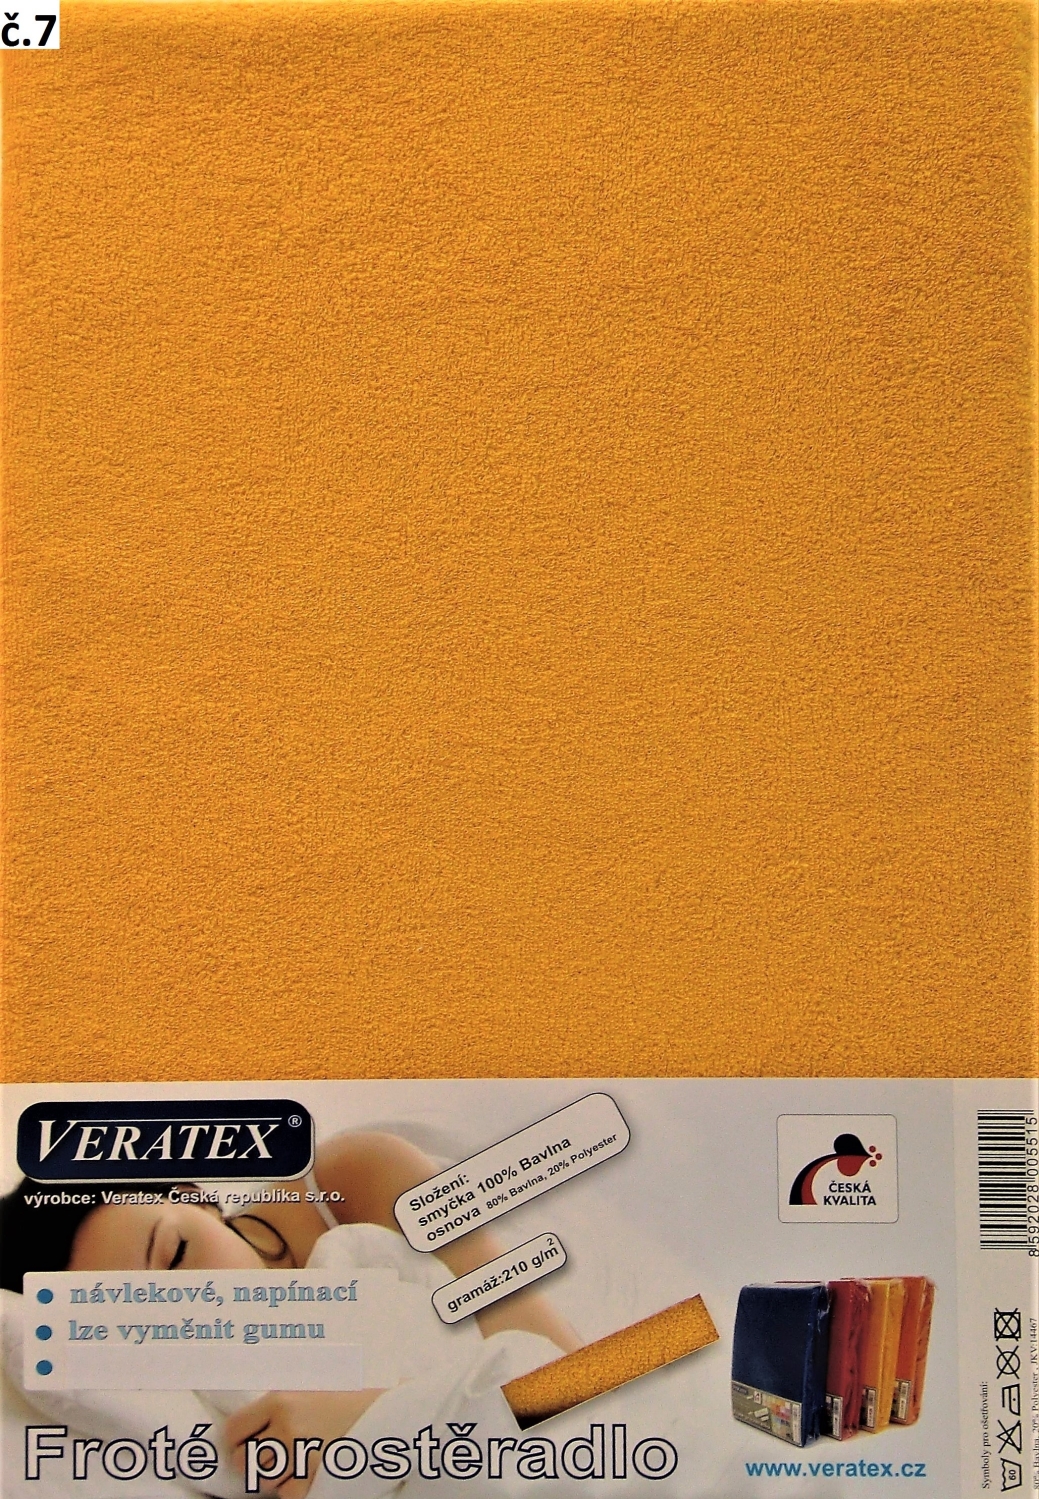 Veratex Froté prostěradlo 160x200 cm (č. 7-sytě žlutá)